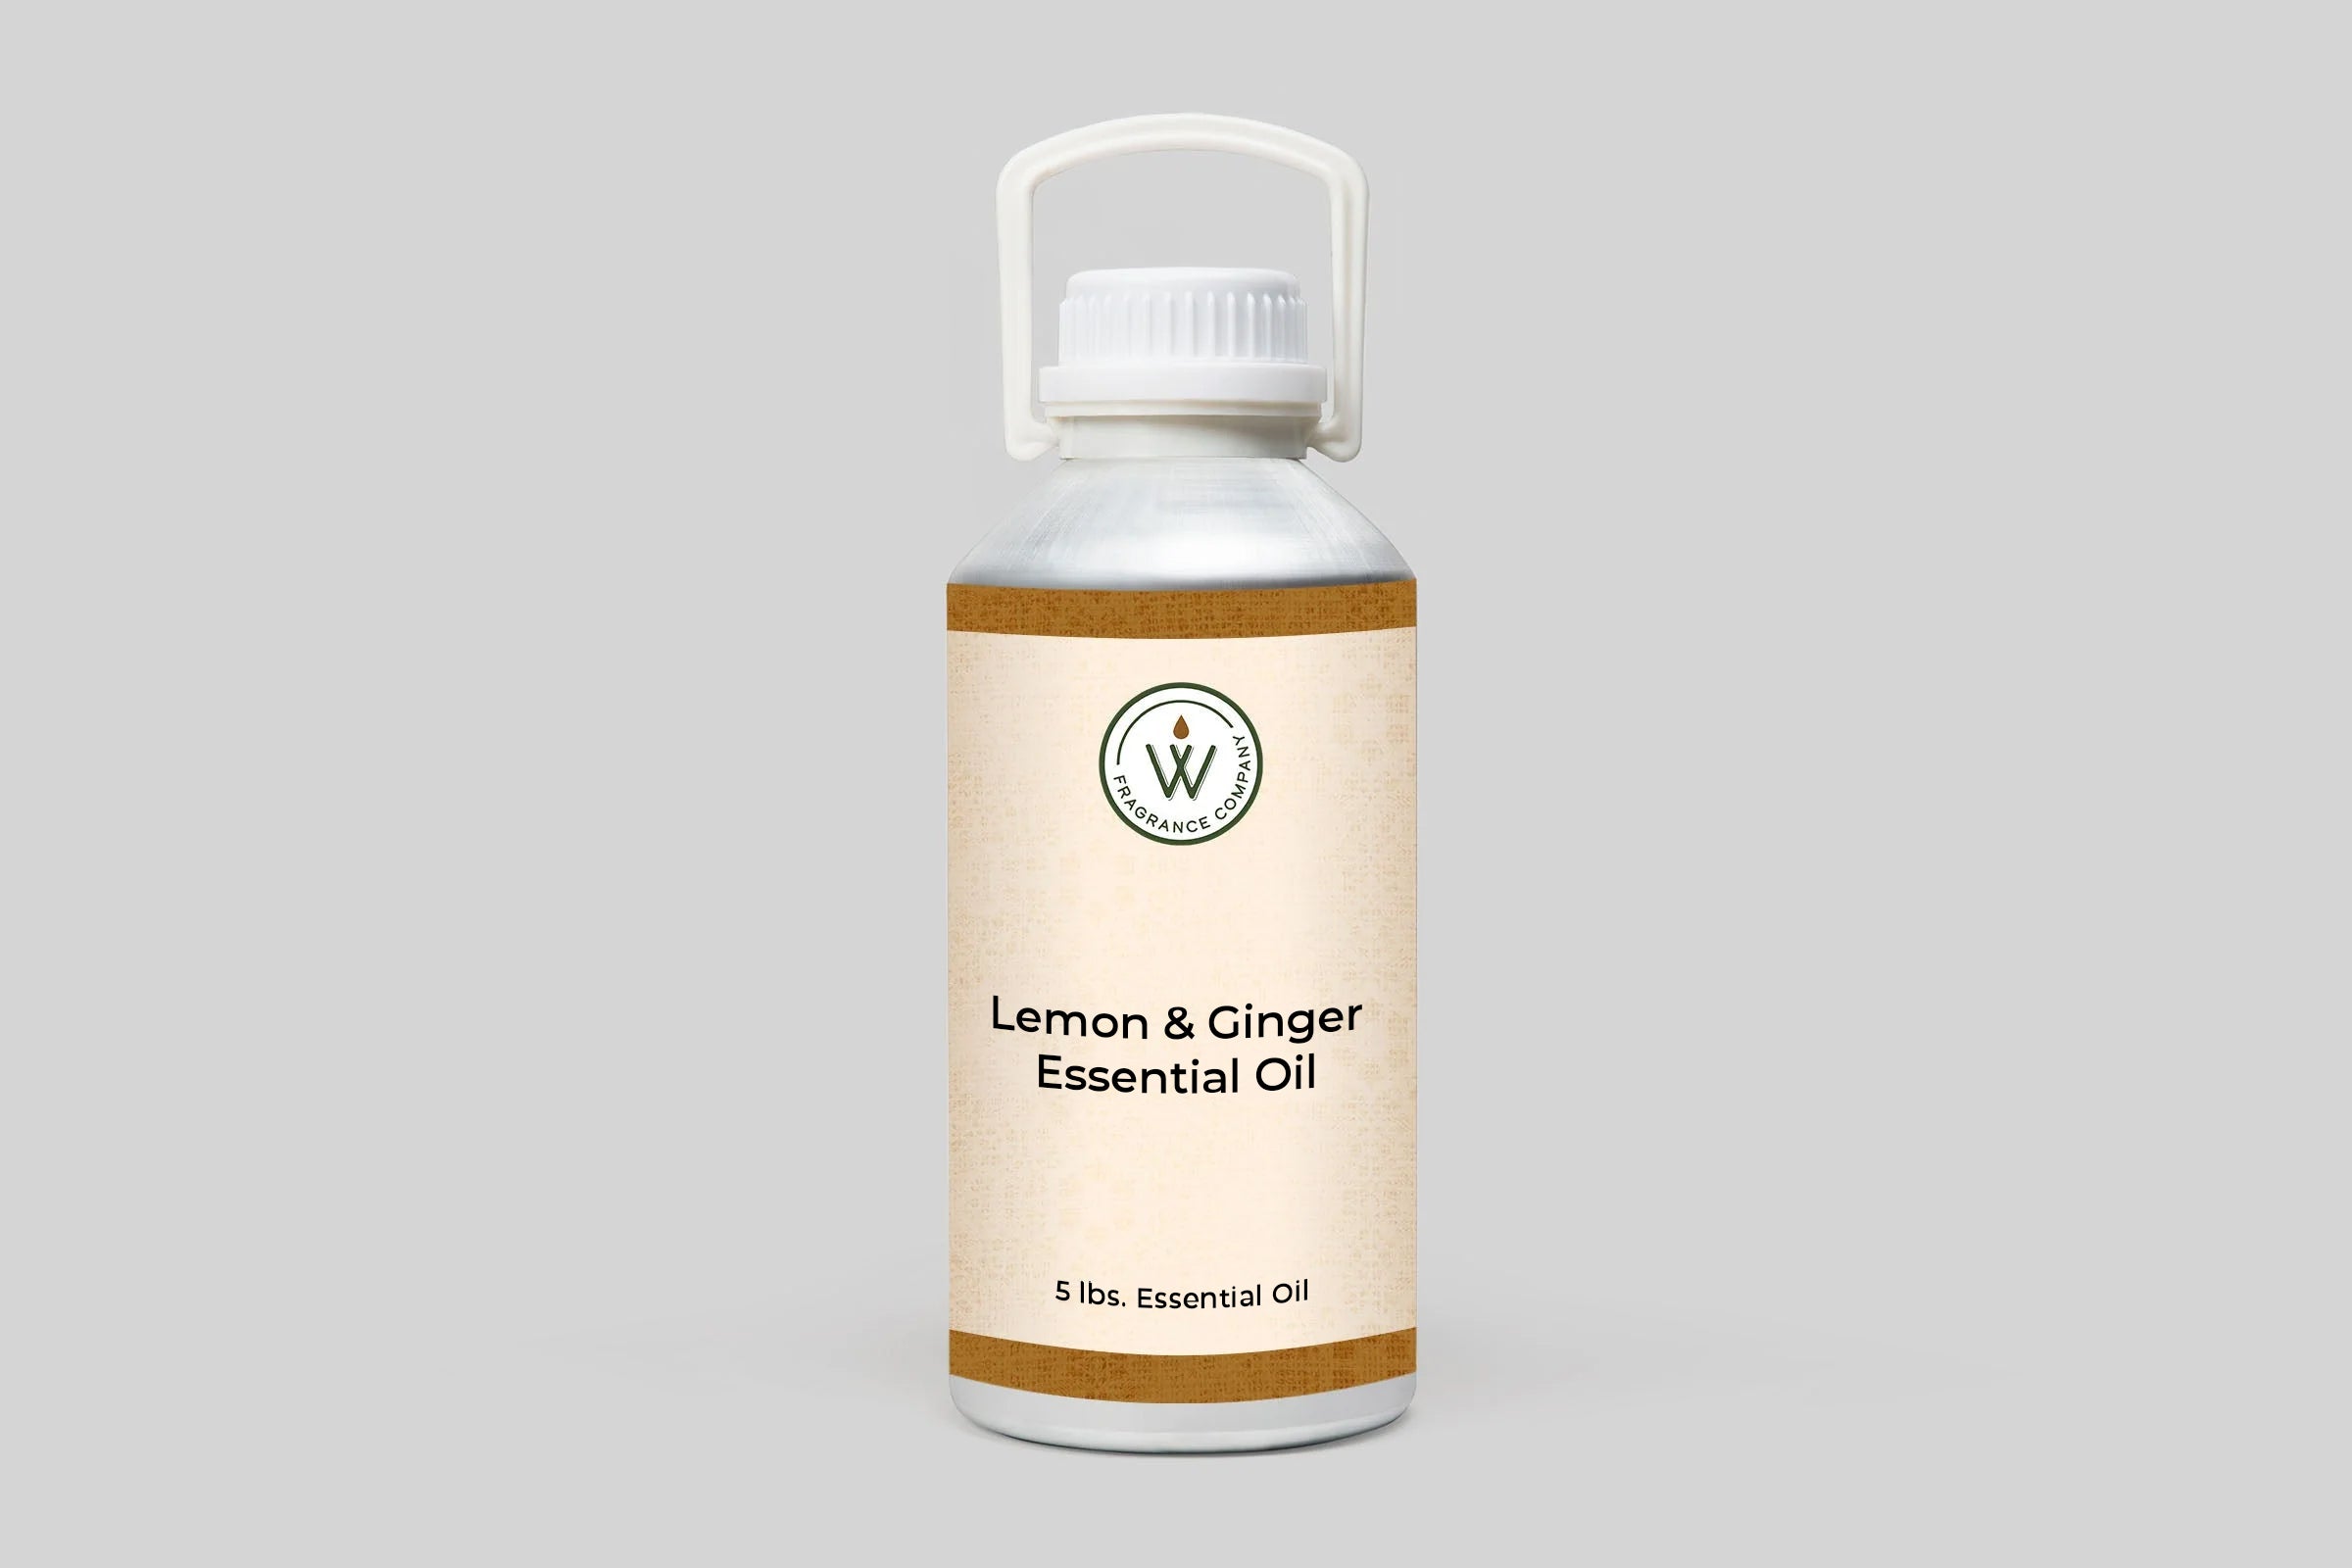 Lemon & Ginger Essential Oil